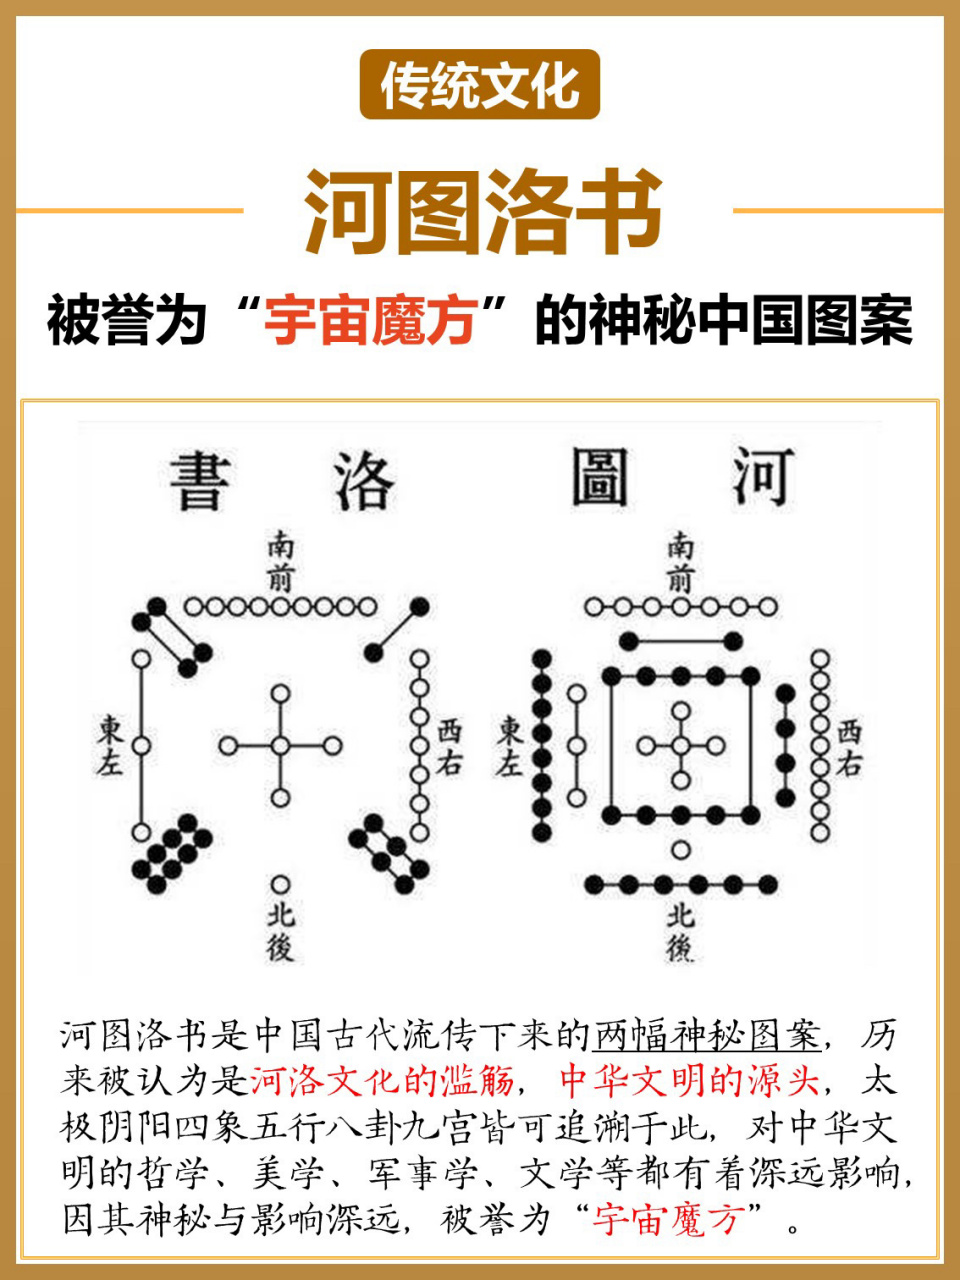 中华文化之源71至今未解之谜来看河图洛书 河图洛书,是中国古代流传